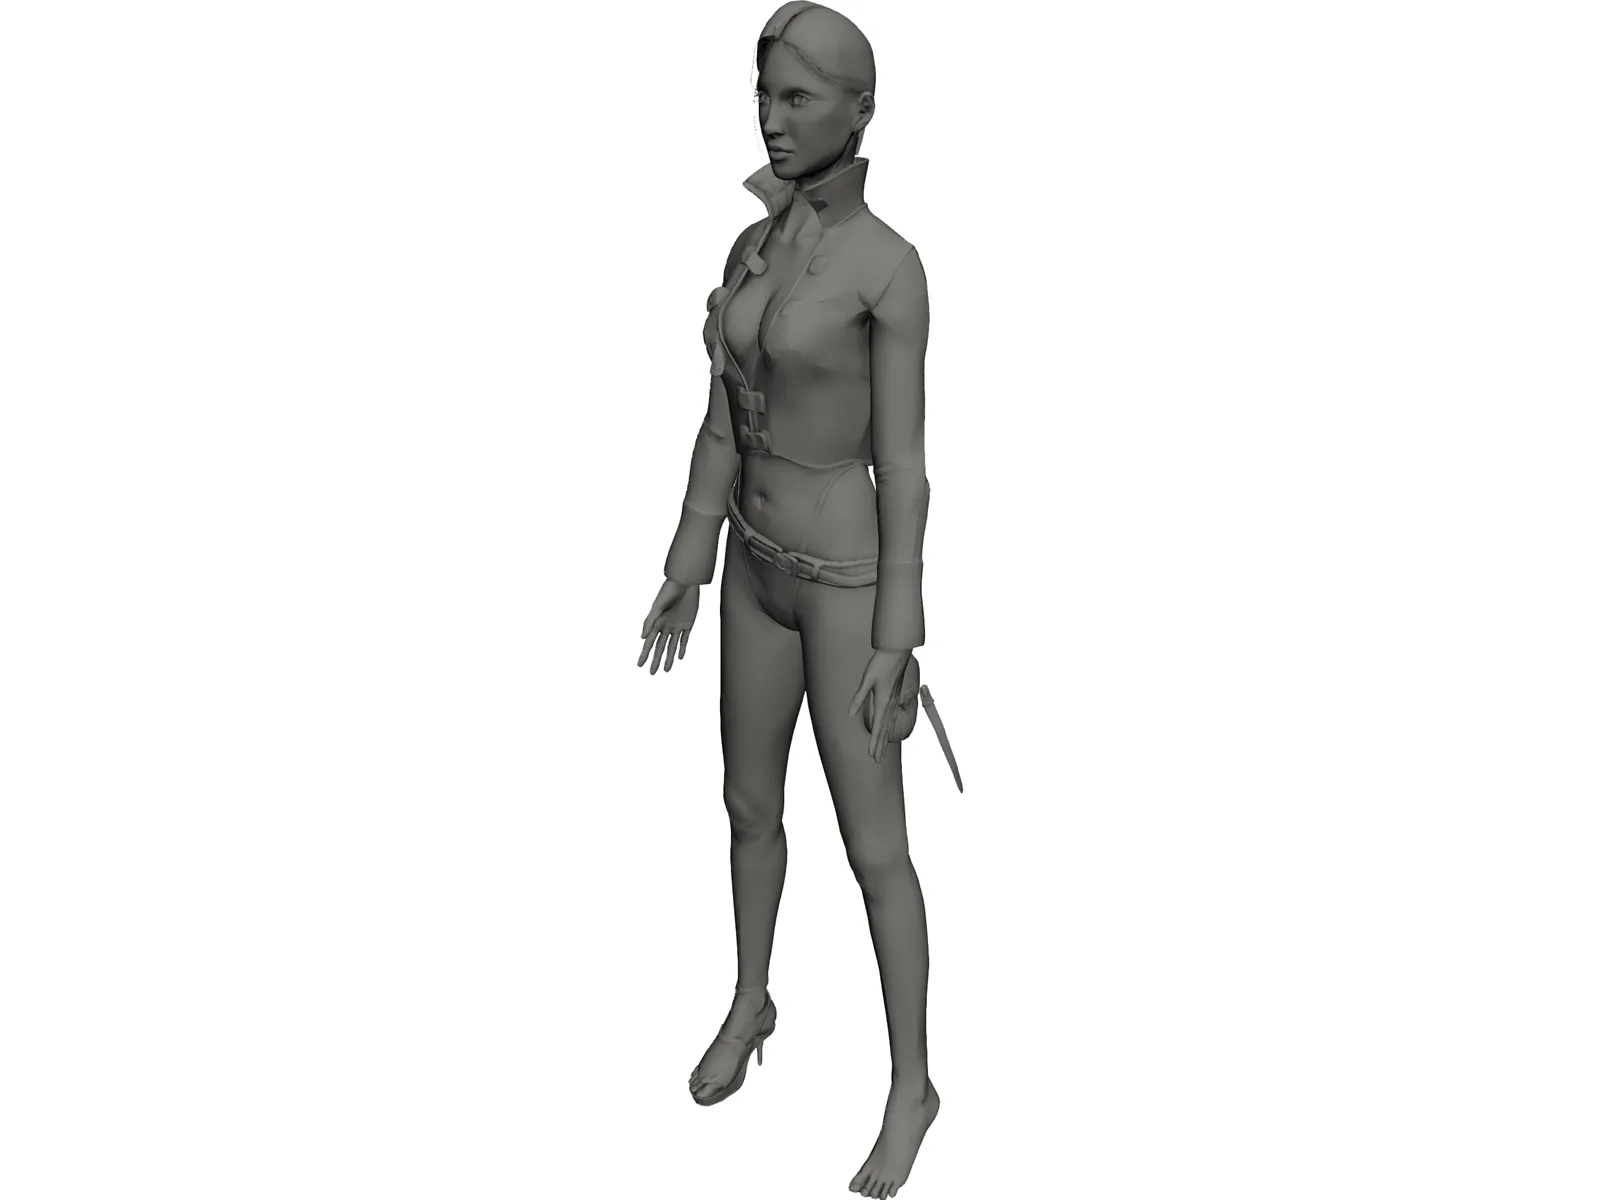 Pirate Woman 3D Model